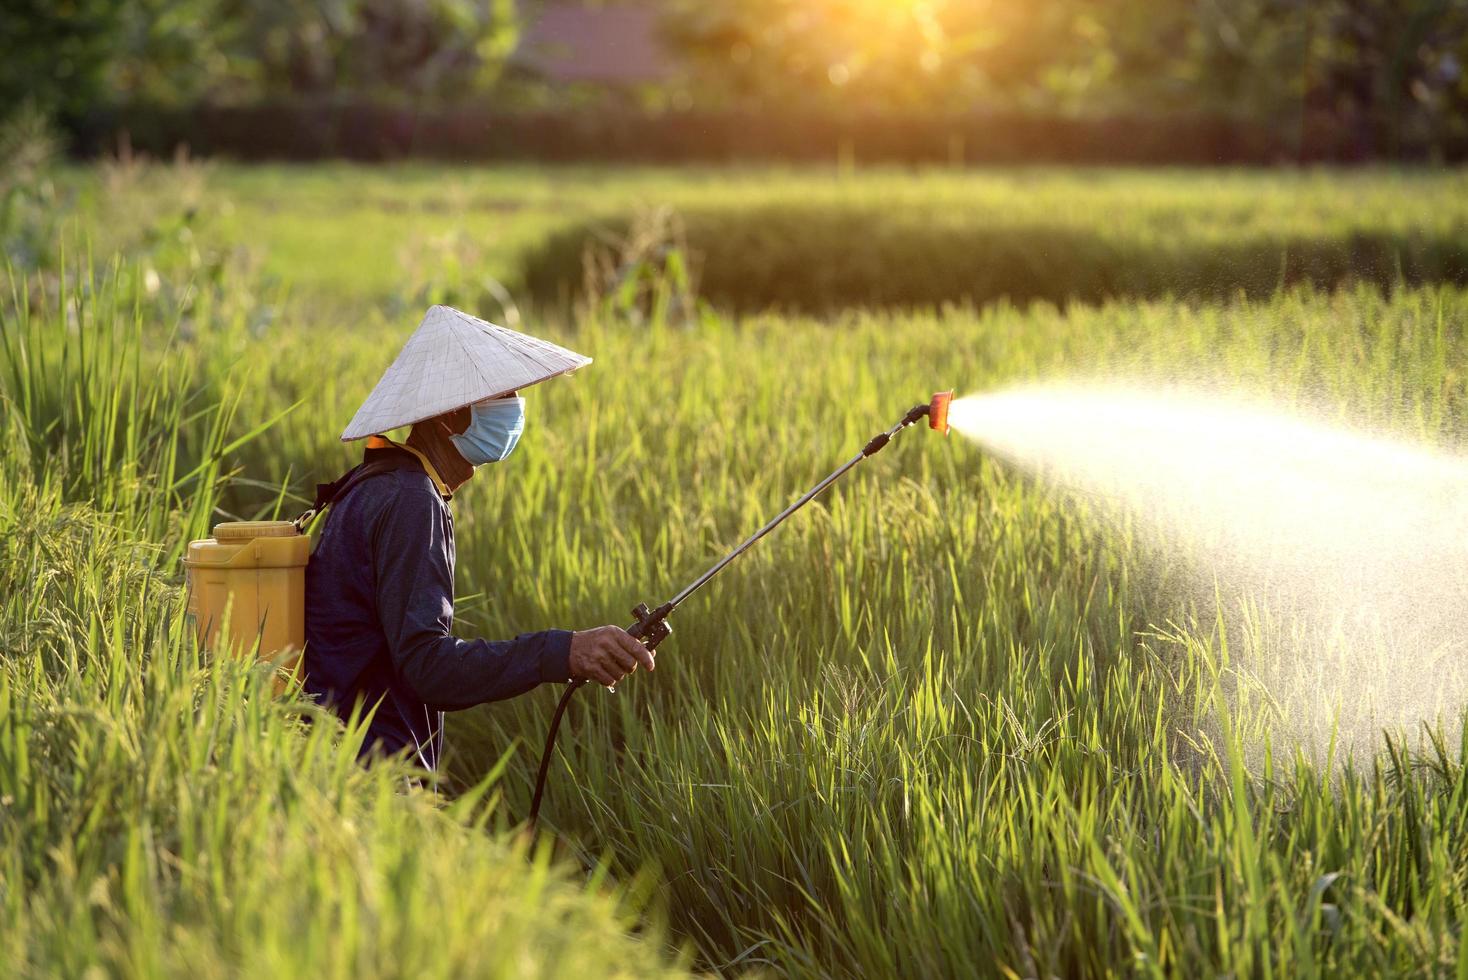 alte Bauern sprühen Dünger oder chemische Pestizide in die Reisfelder, chemische Düngemittel. foto